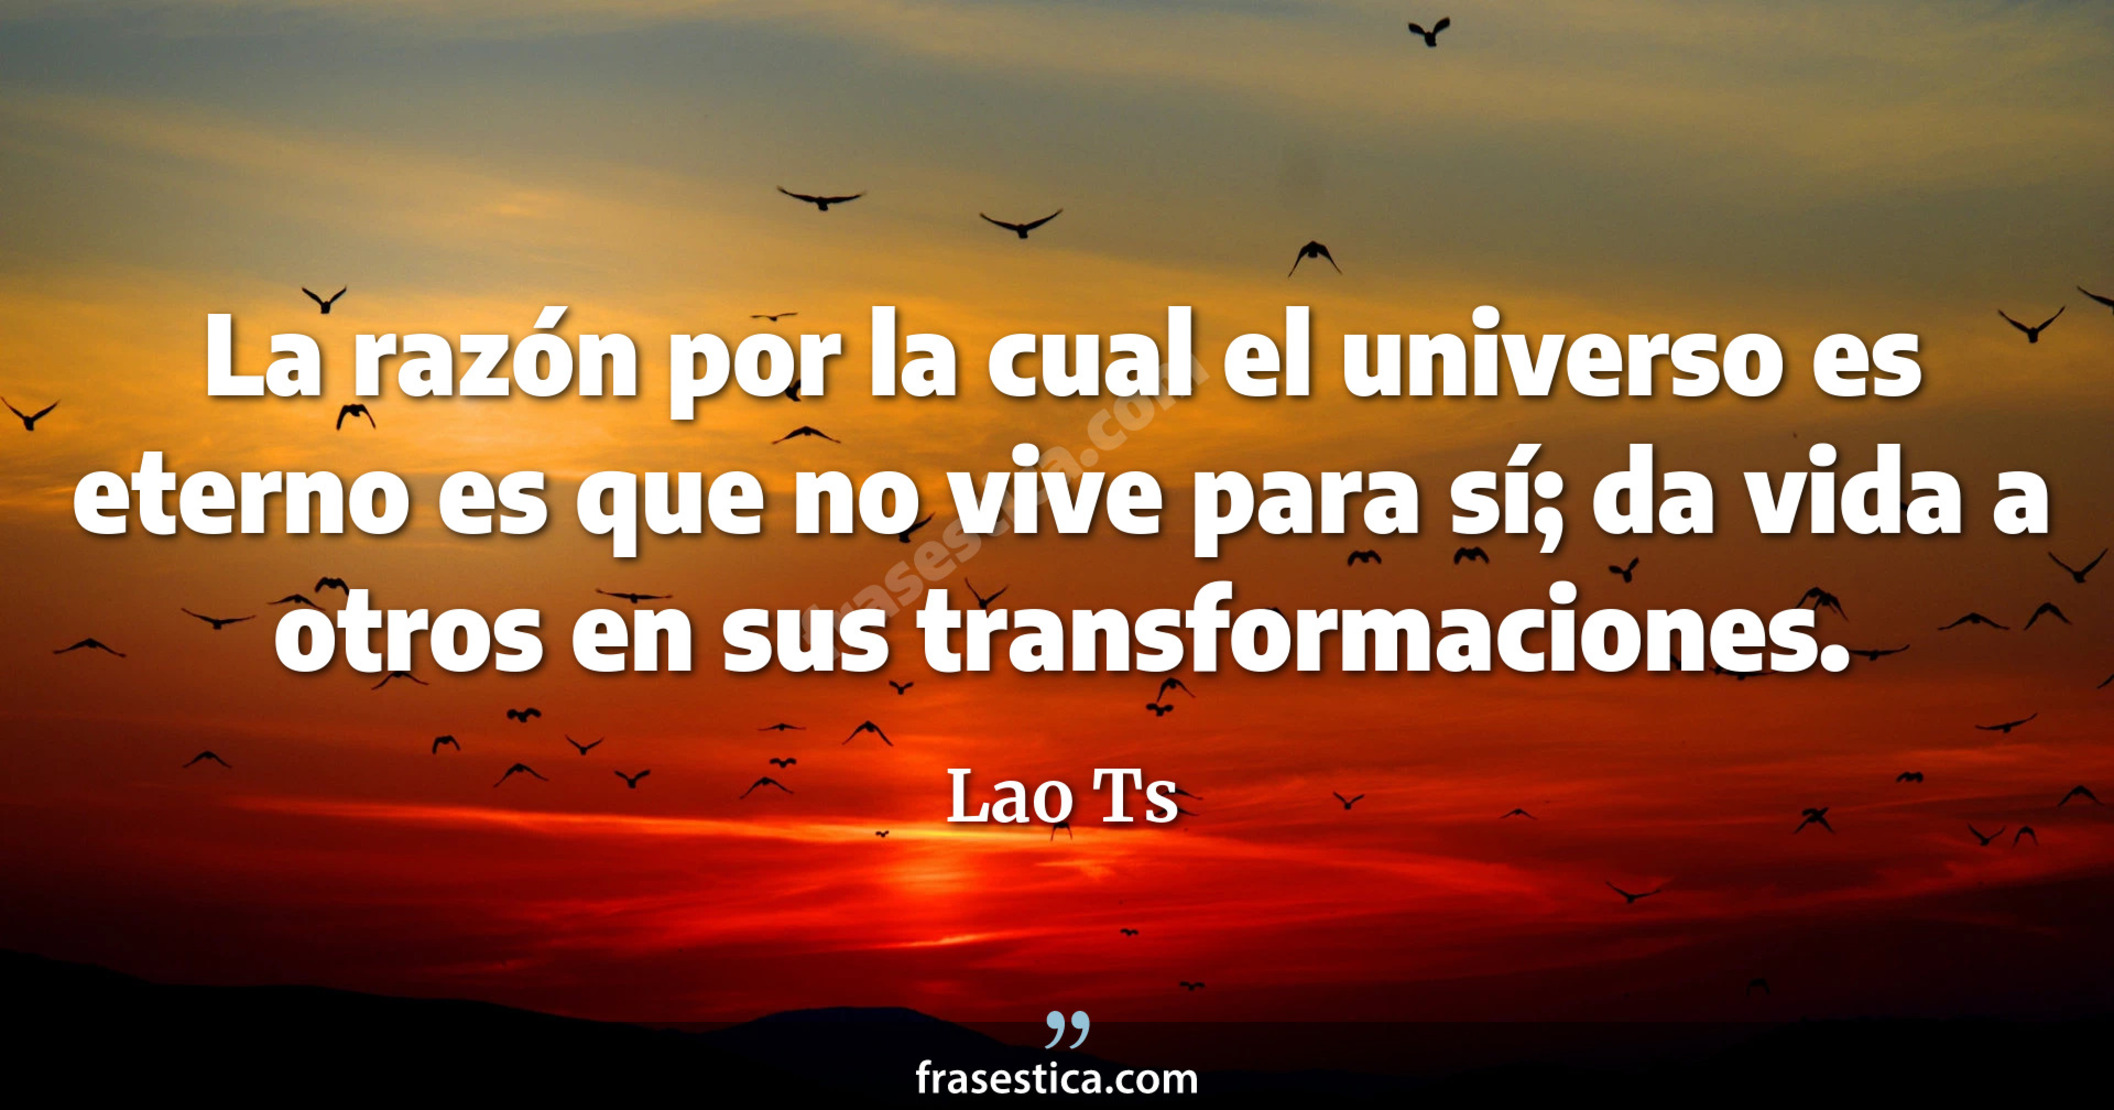 La razón por la cual el universo es eterno es que no vive para sí; da vida a otros en sus transformaciones. - Lao Ts